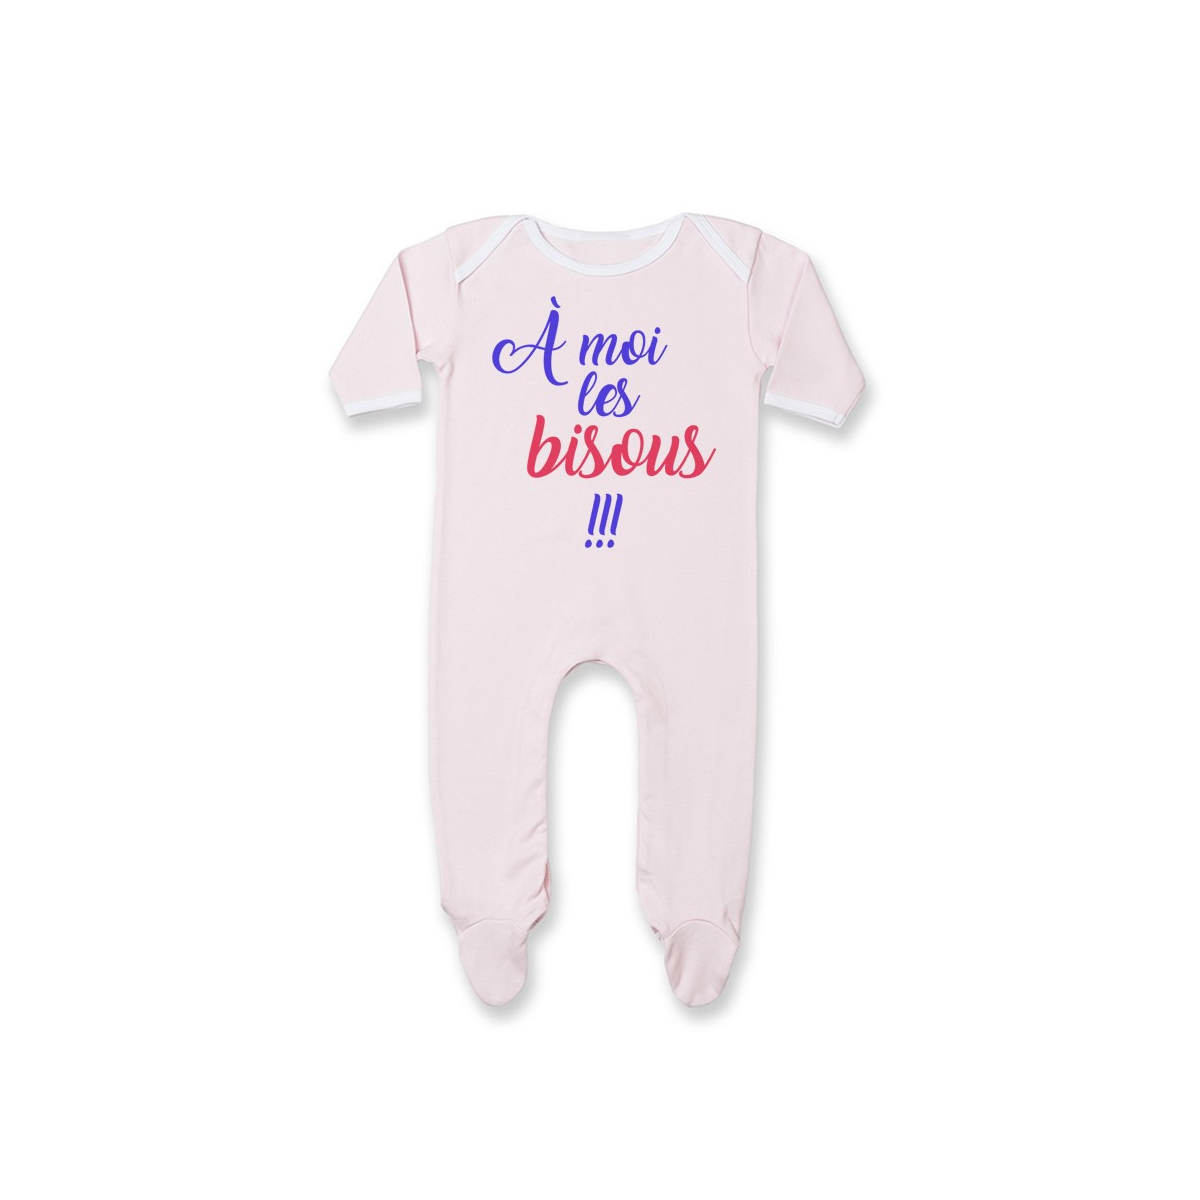 Pyjama bébé A moi les bisous !!!